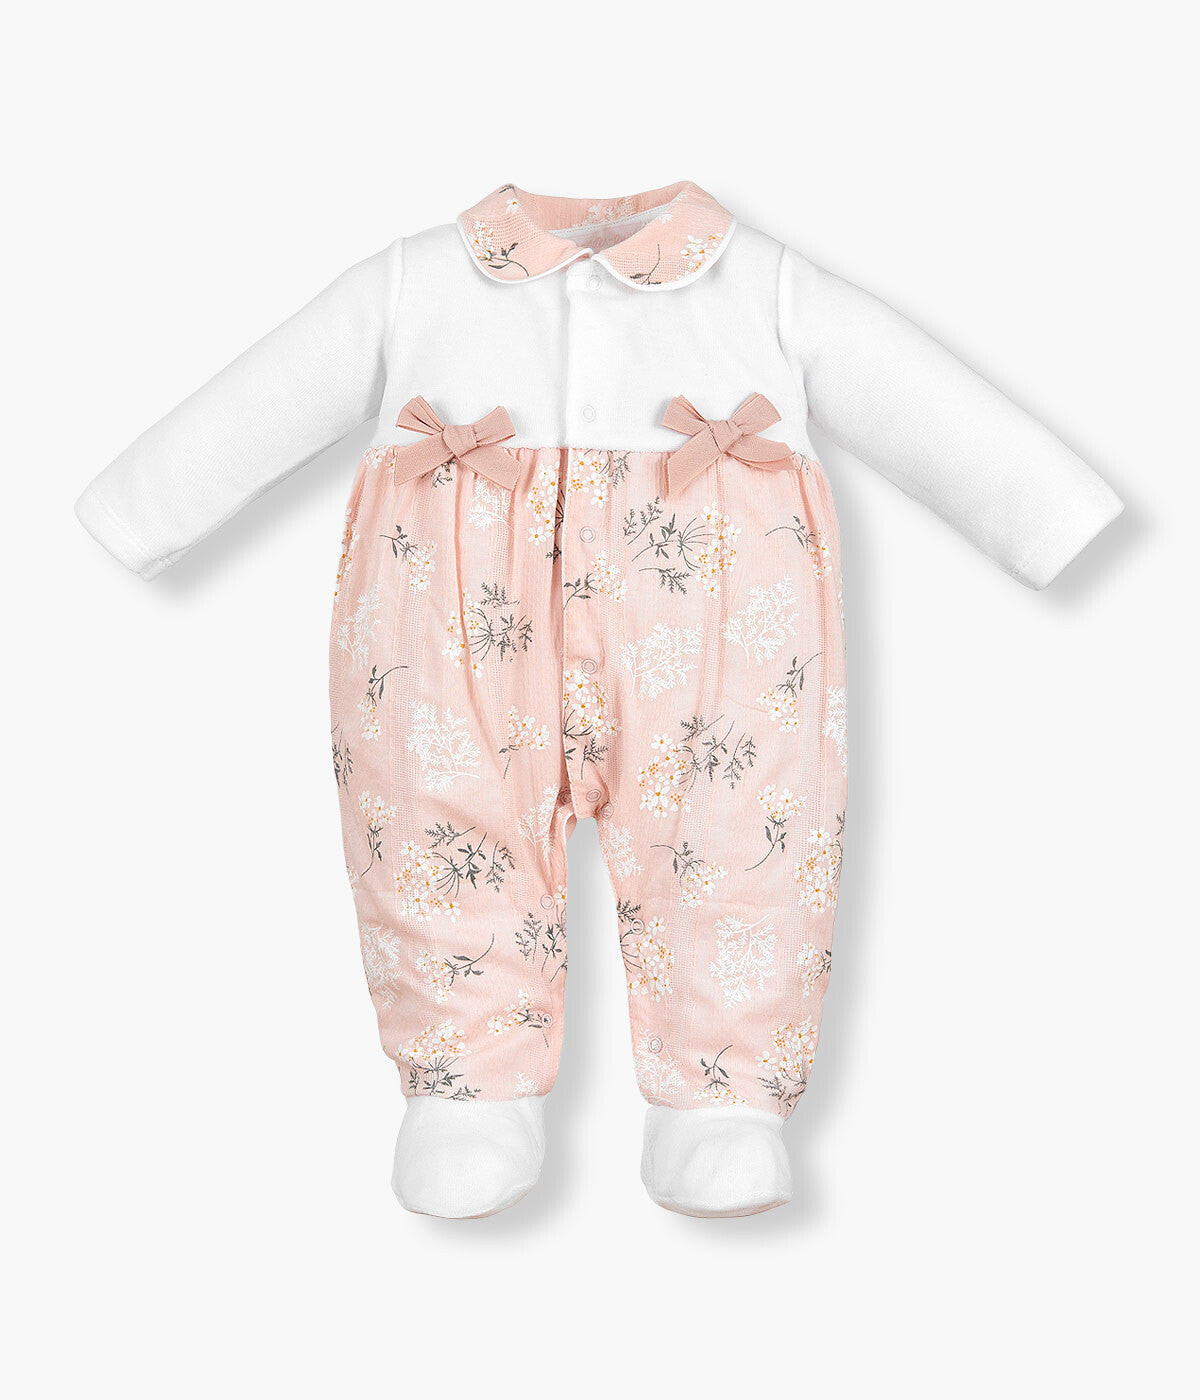 Babygrow em Veludo Floral para Bebé Menina - Branco e Rosa